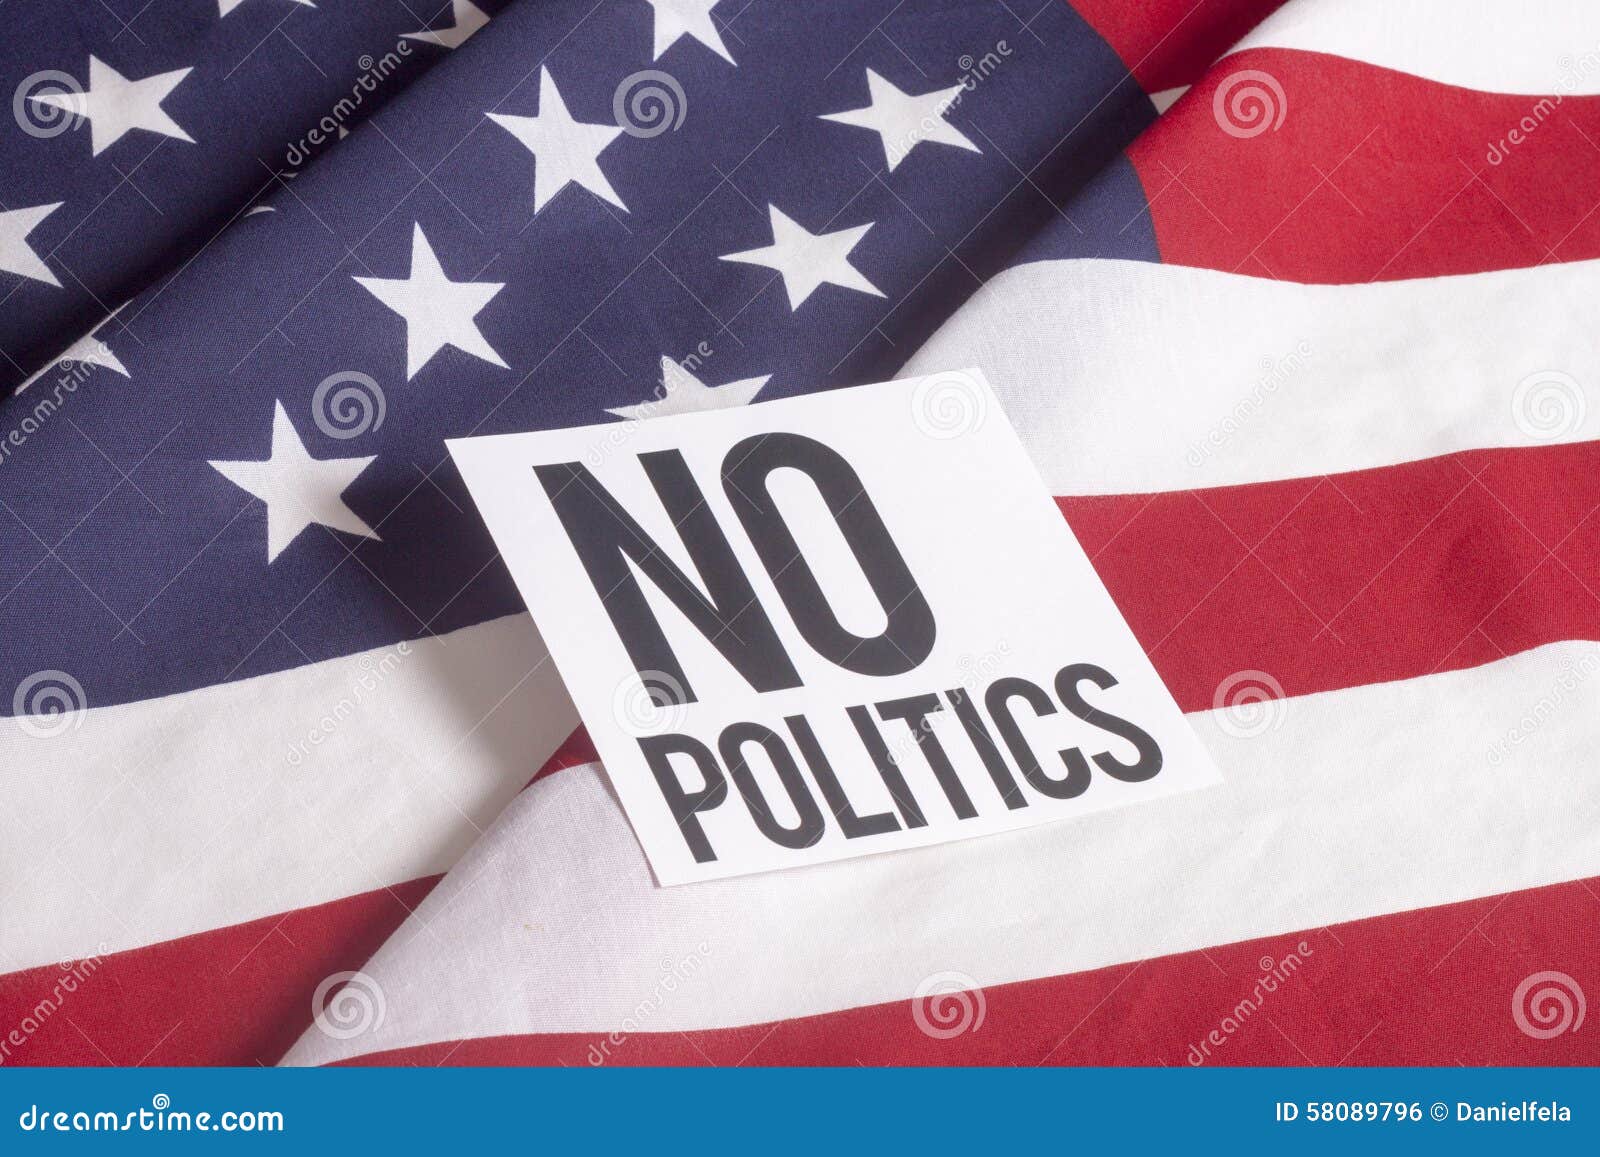 american flag - no politics